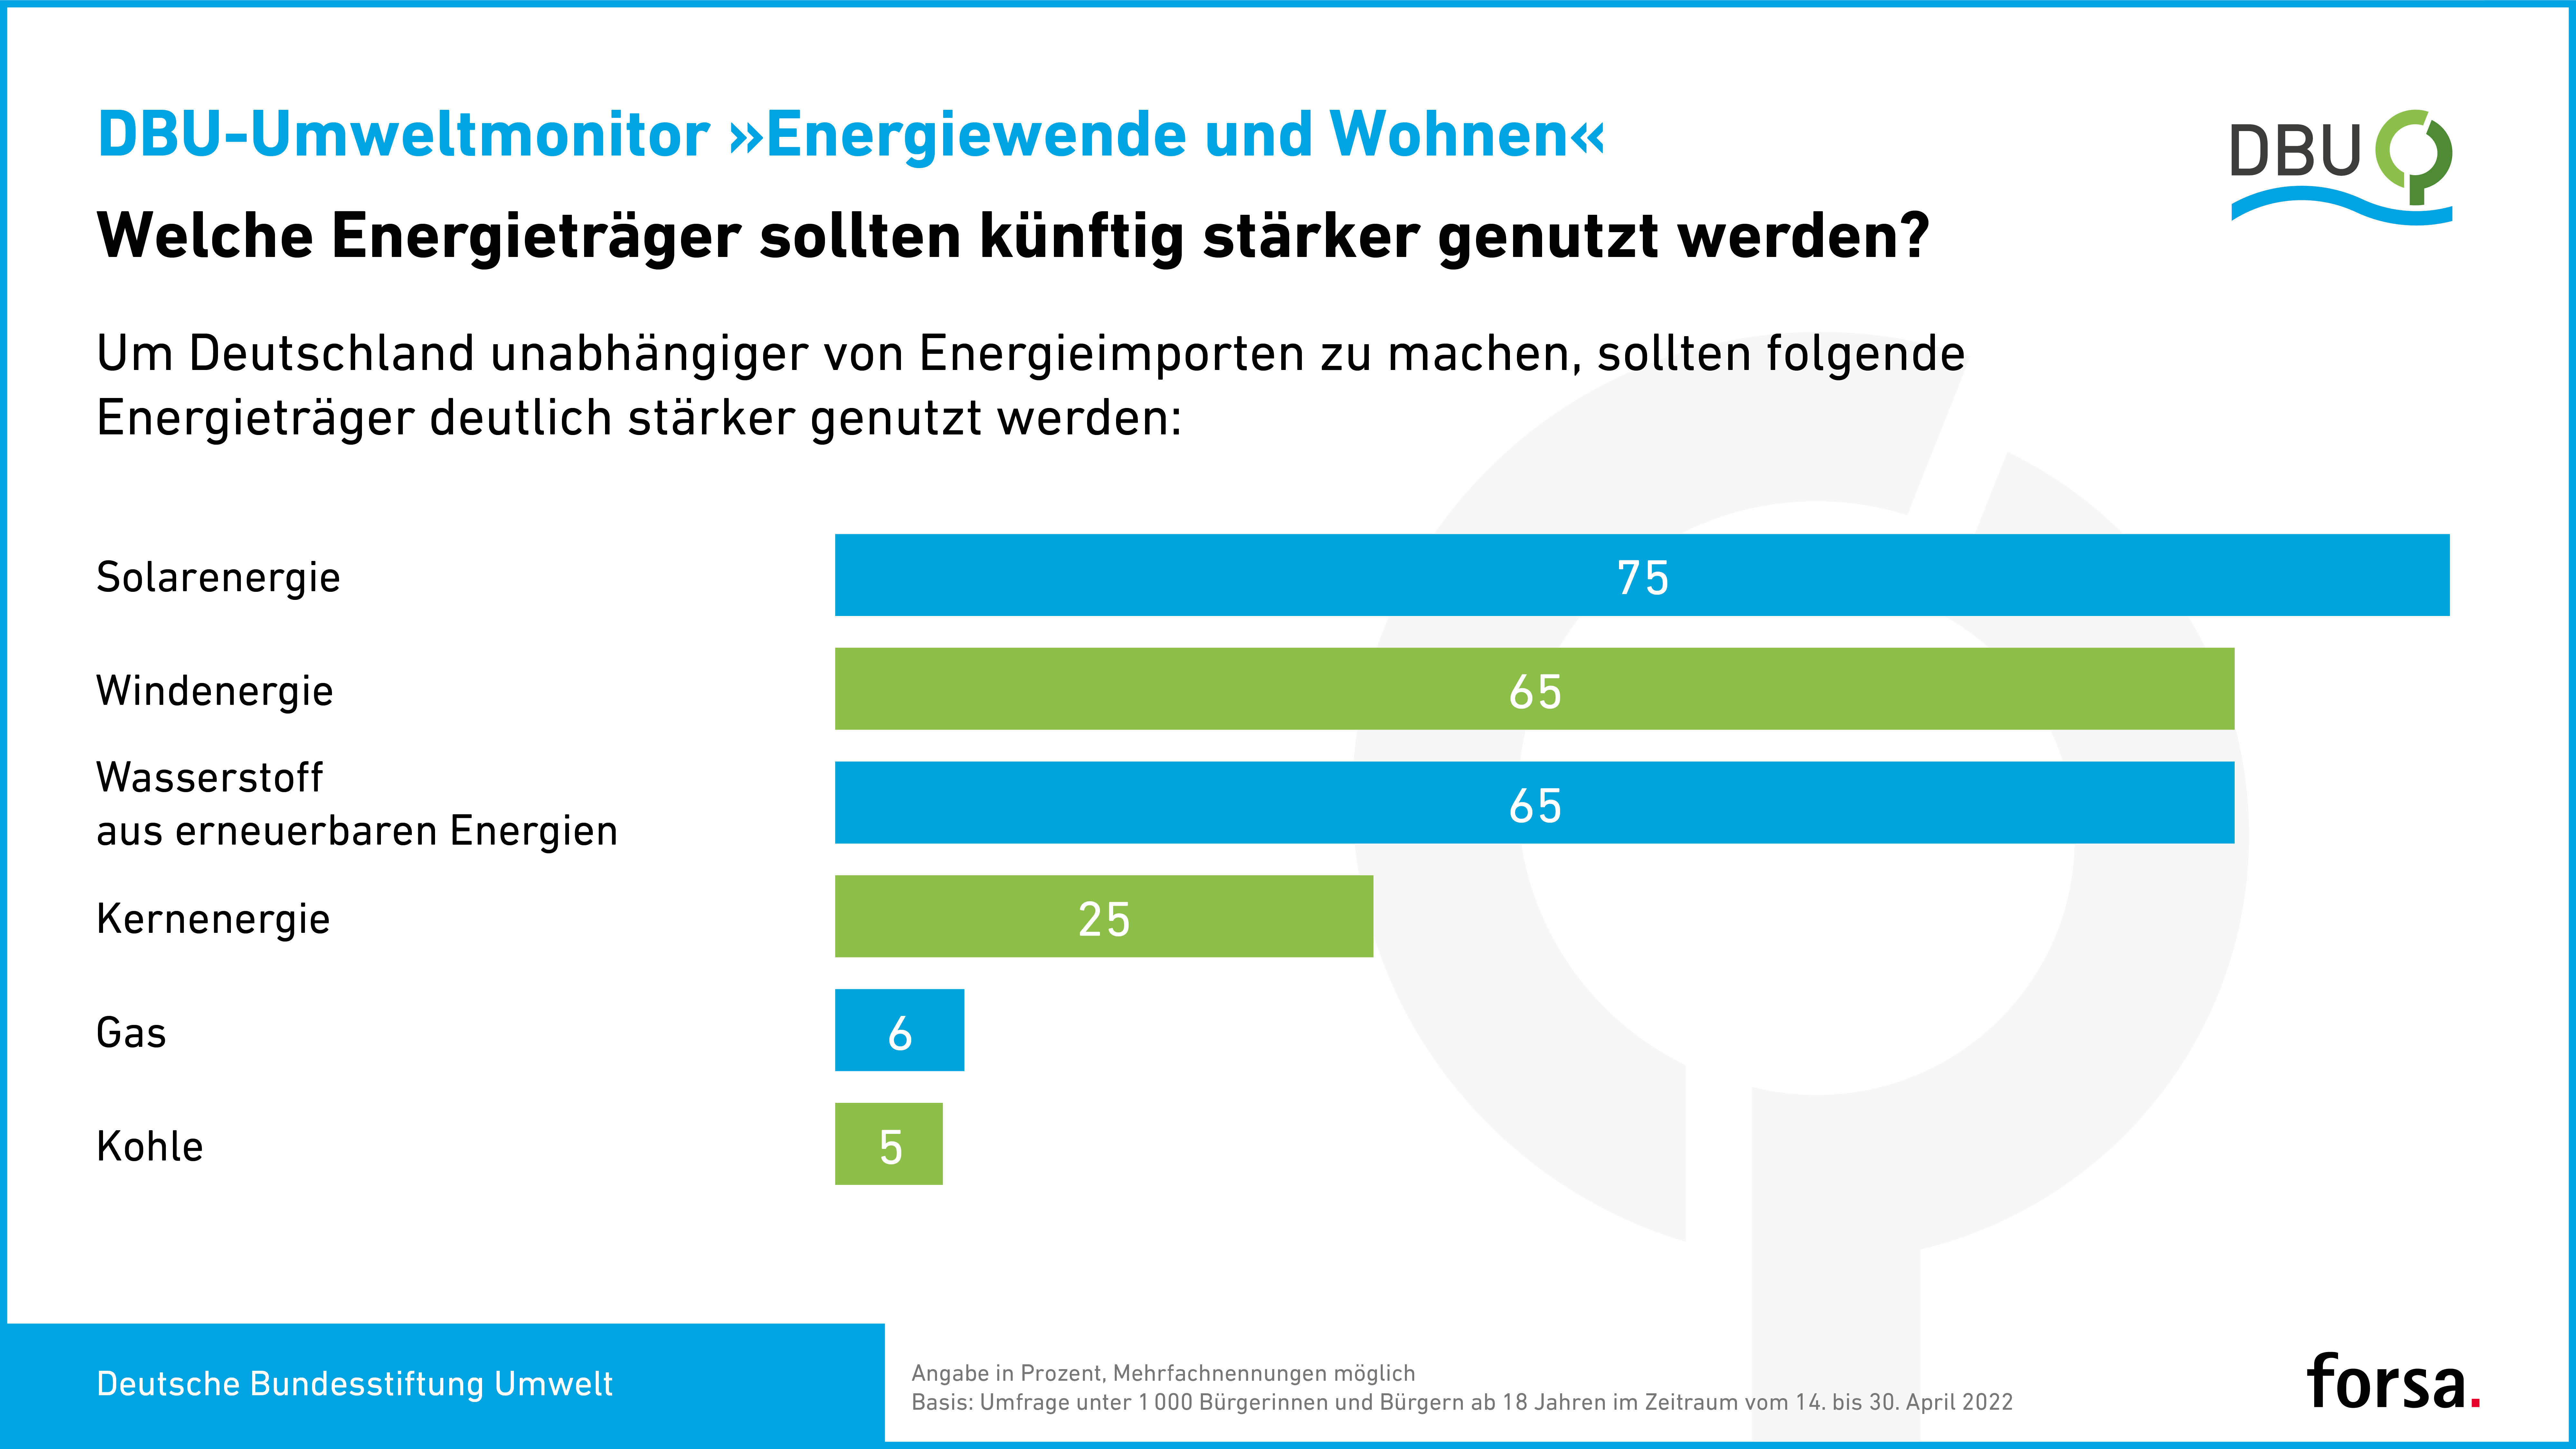 Grafik zum DBU-Umweltmonitor "Energiewende und Wohnen"